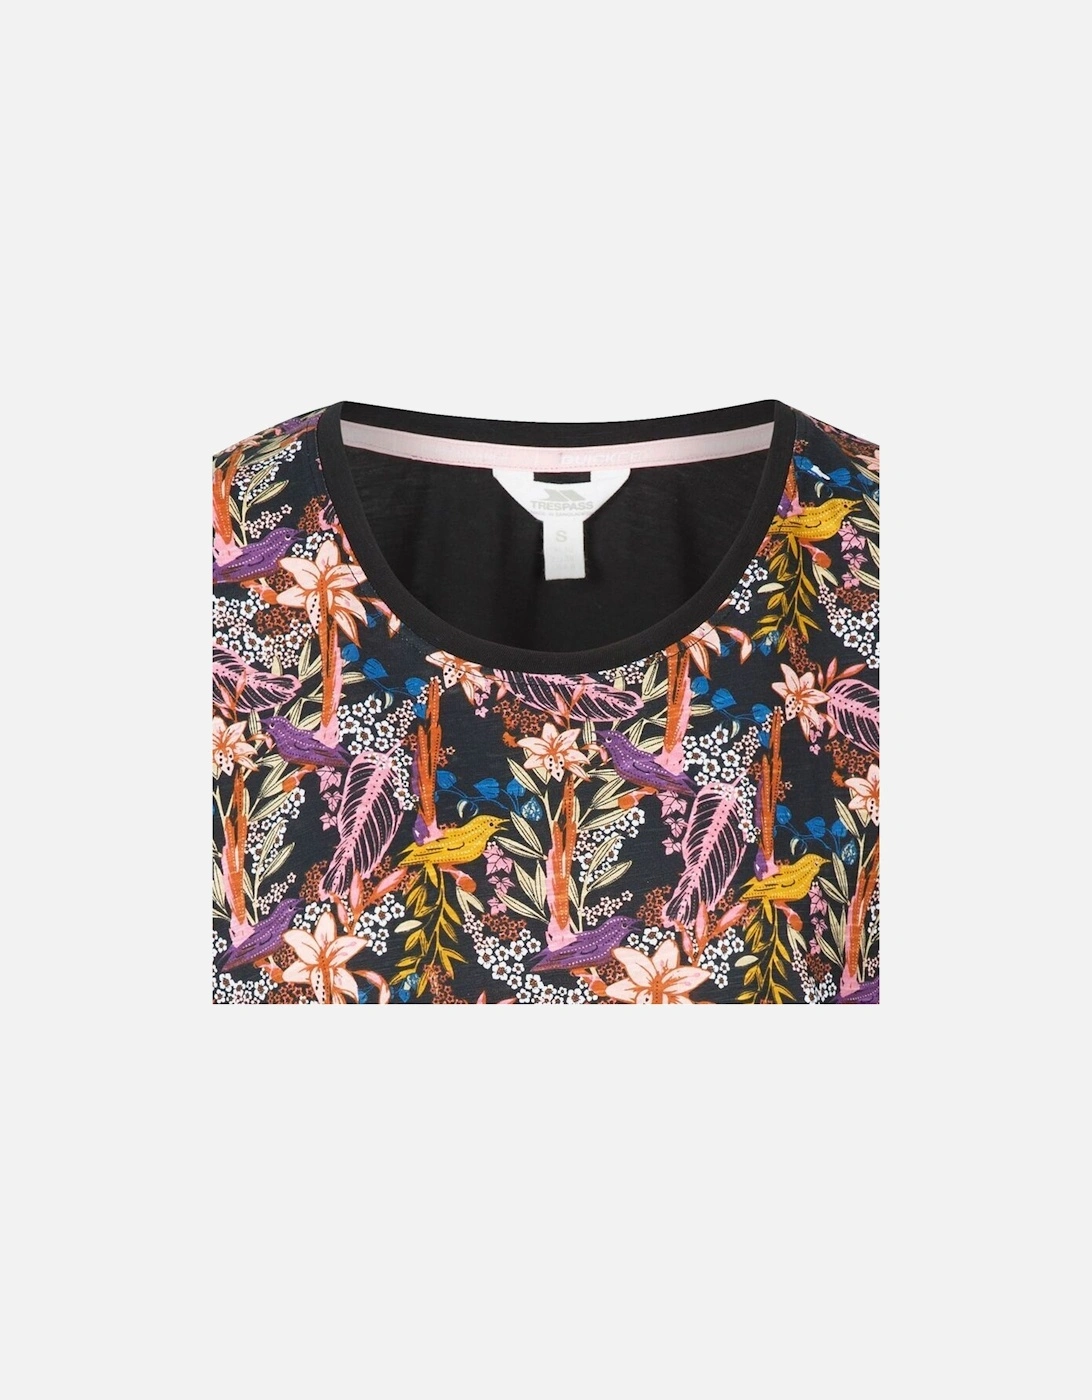 Womens/Ladies Highveld T-Shirt